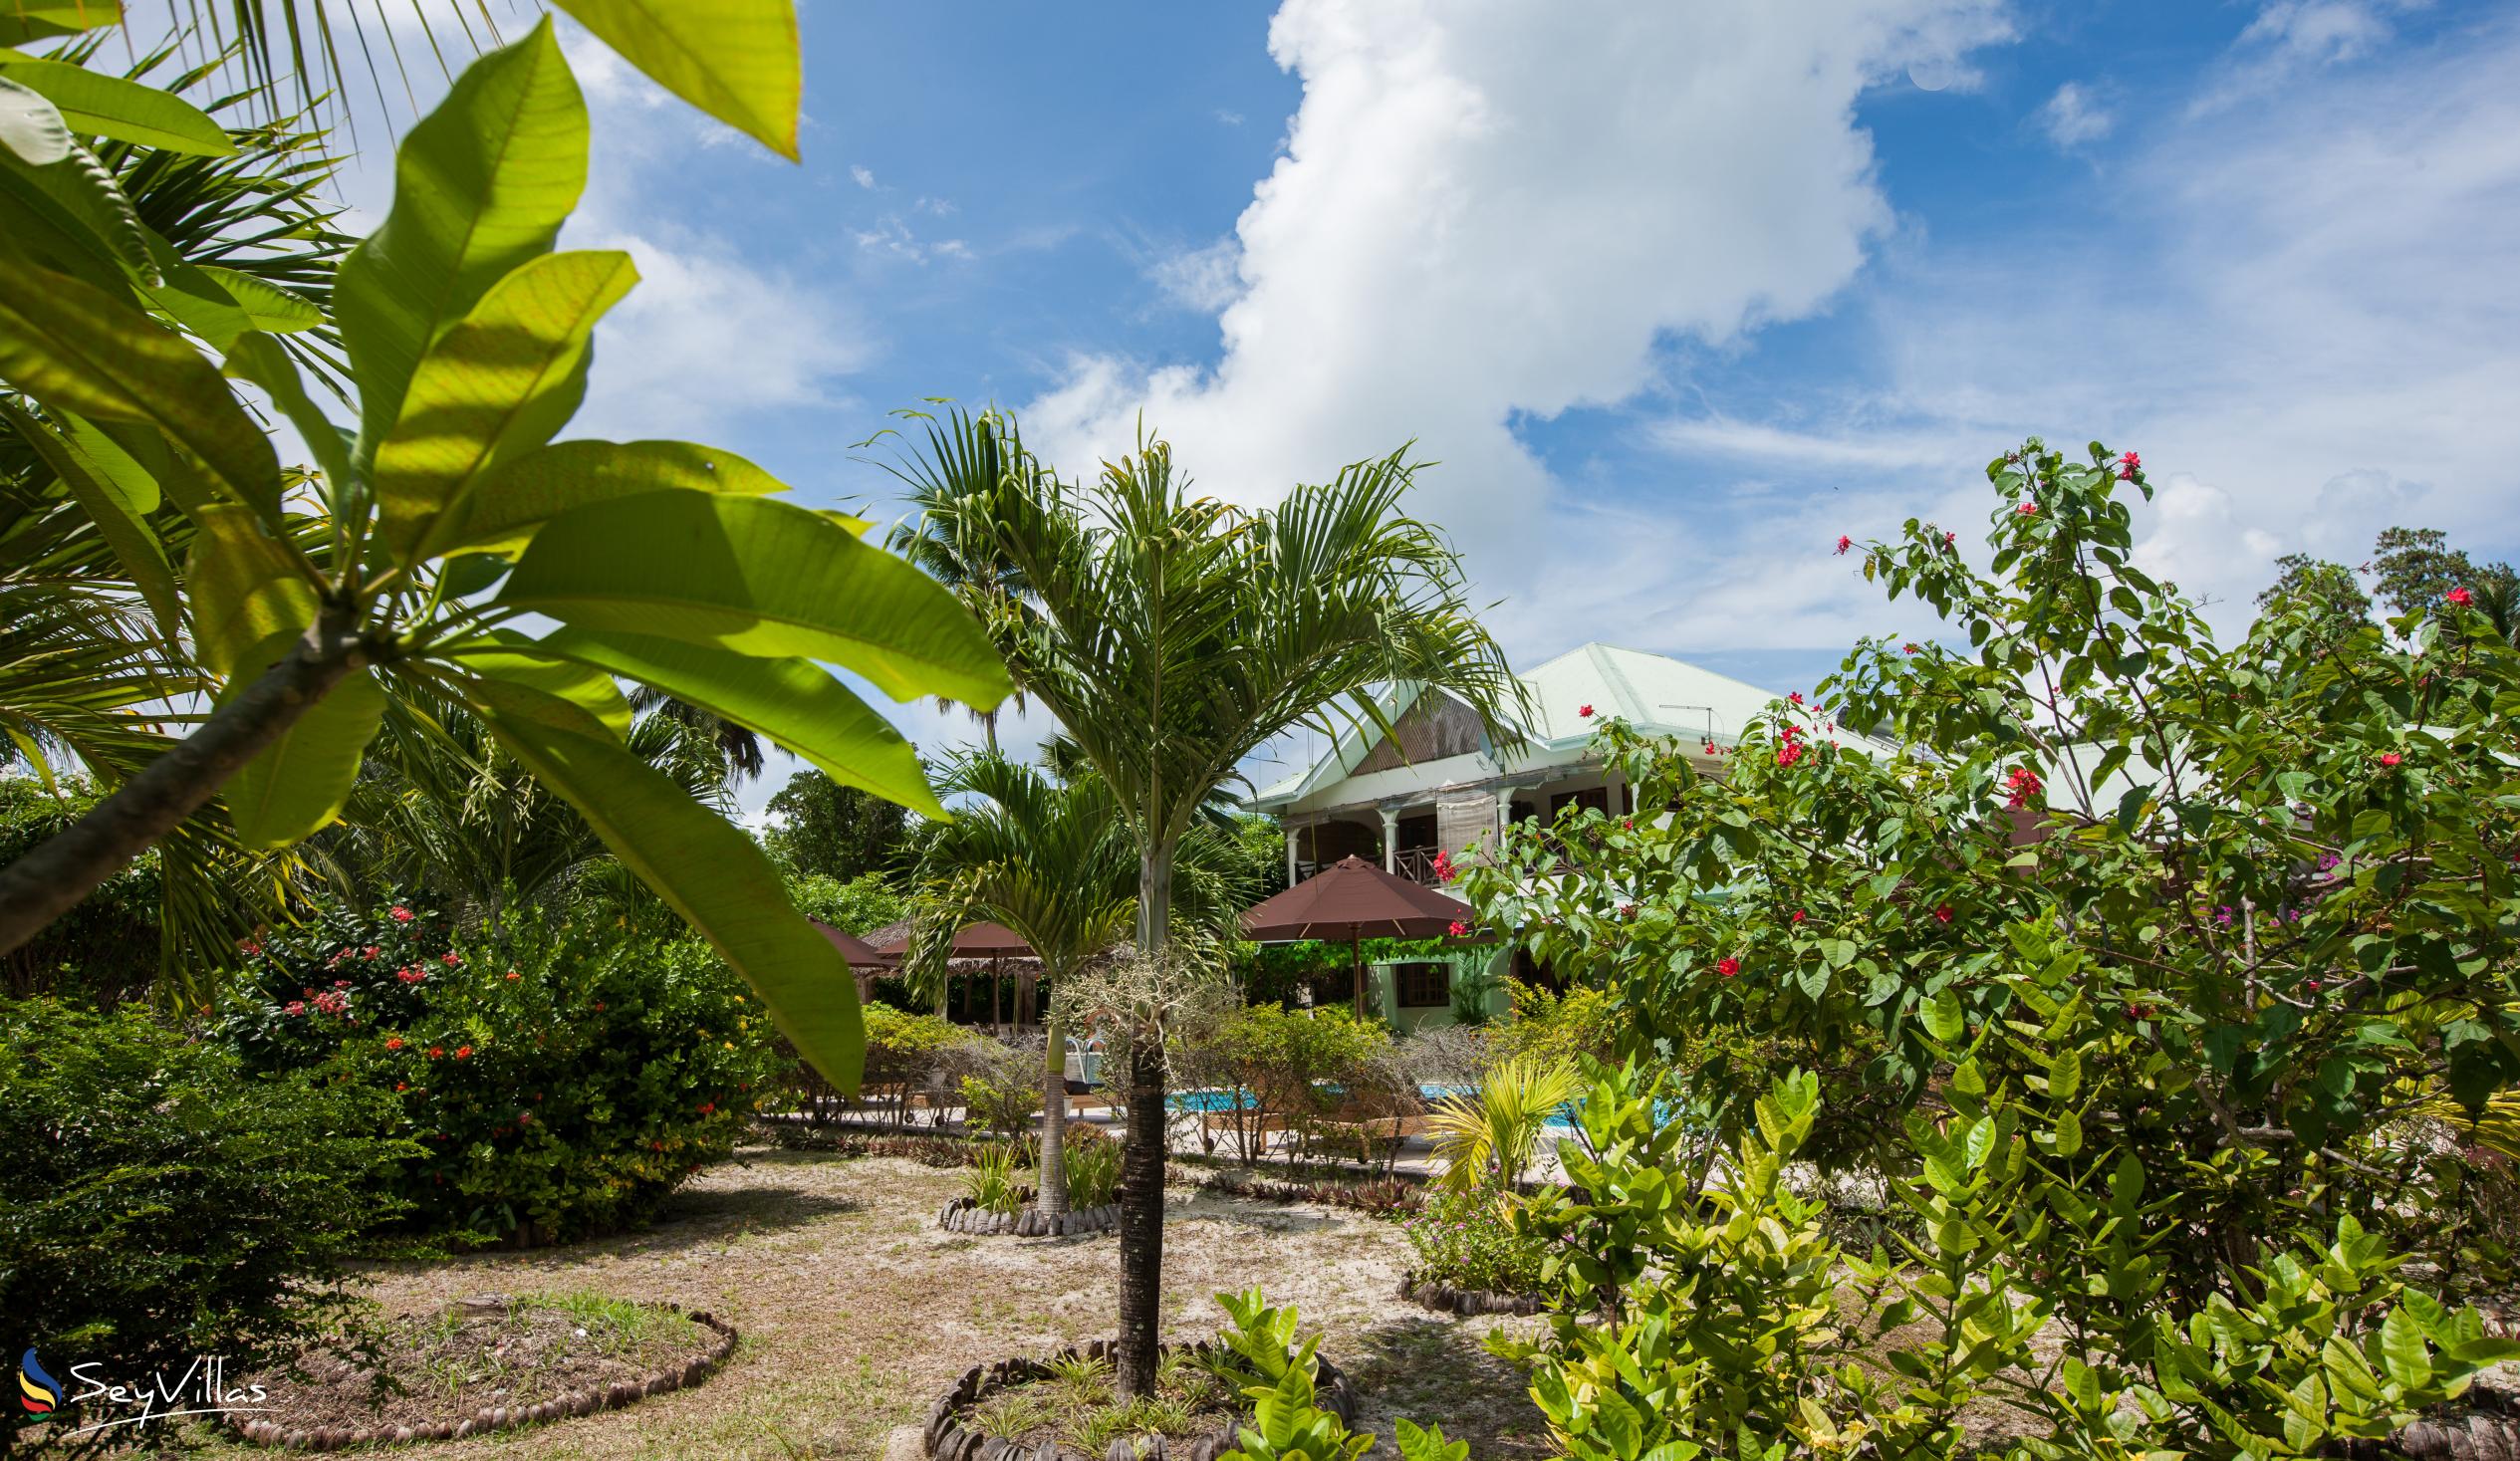 Foto 12: Villa de Cerf - Extérieur - Cerf Island (Seychelles)